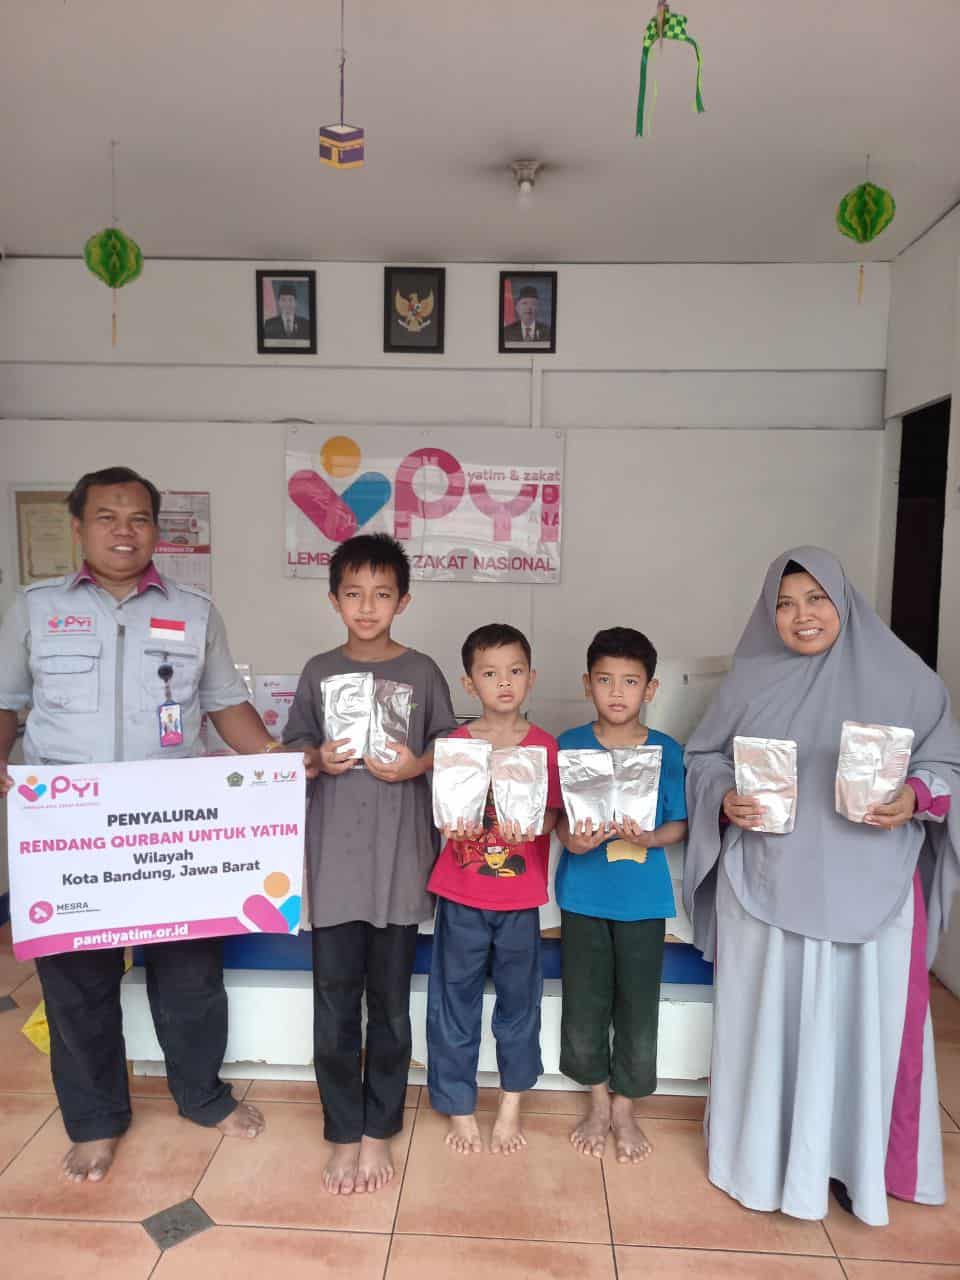 Penyaluran Rendang Qurban untuk Asrama Yatim kota Bandung